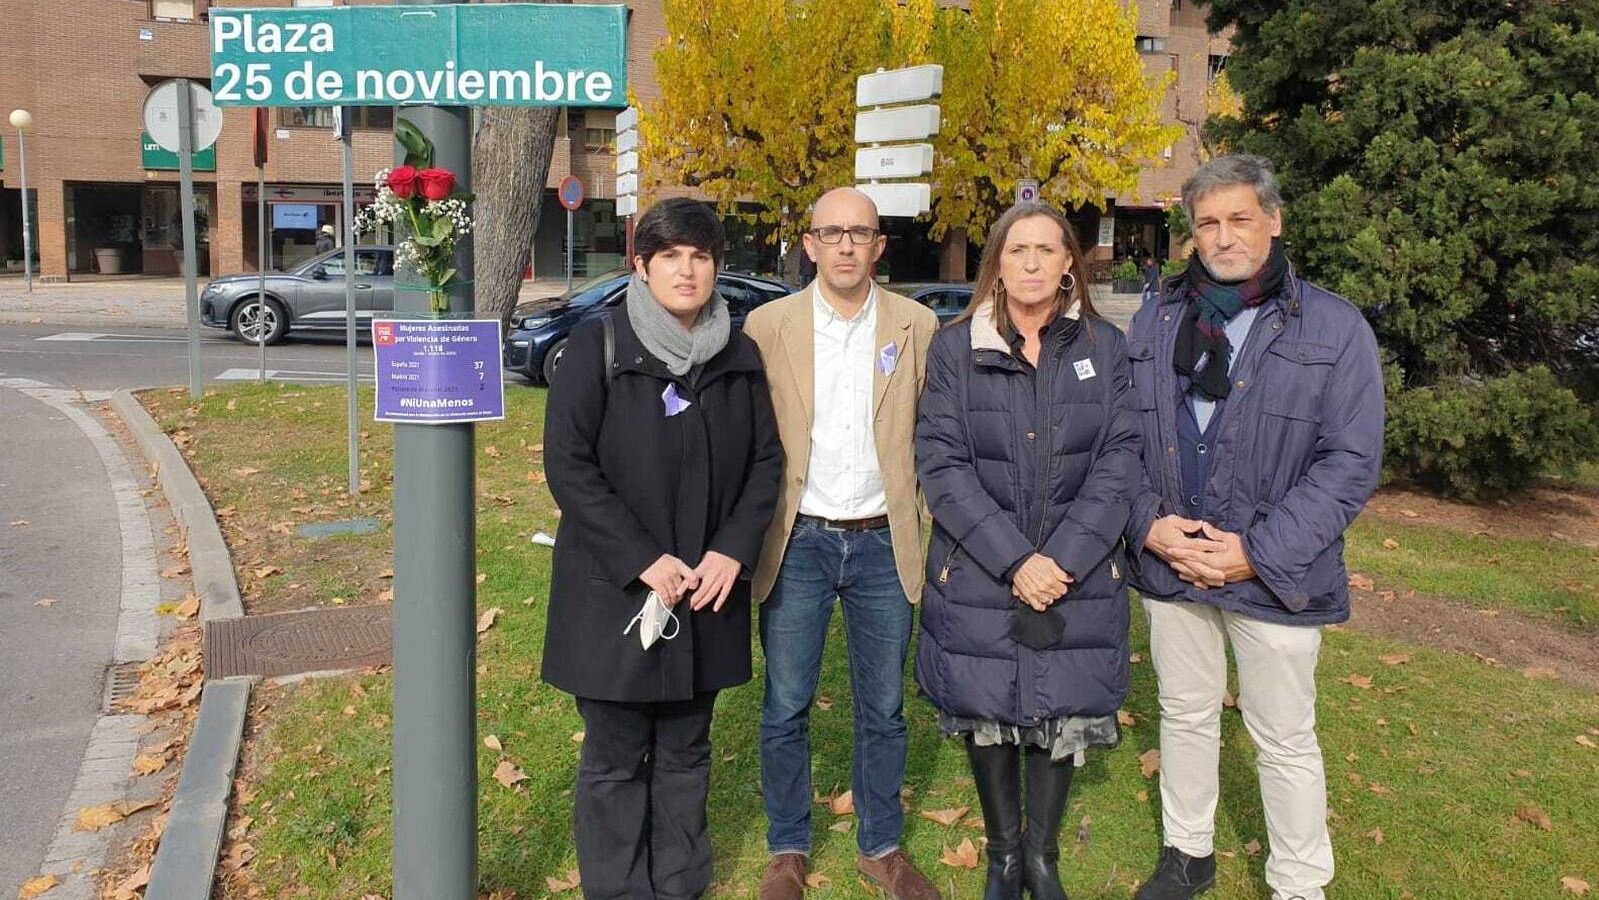 El PSOE pide una 'Plaza 25 de noviembre' en Pozuelo